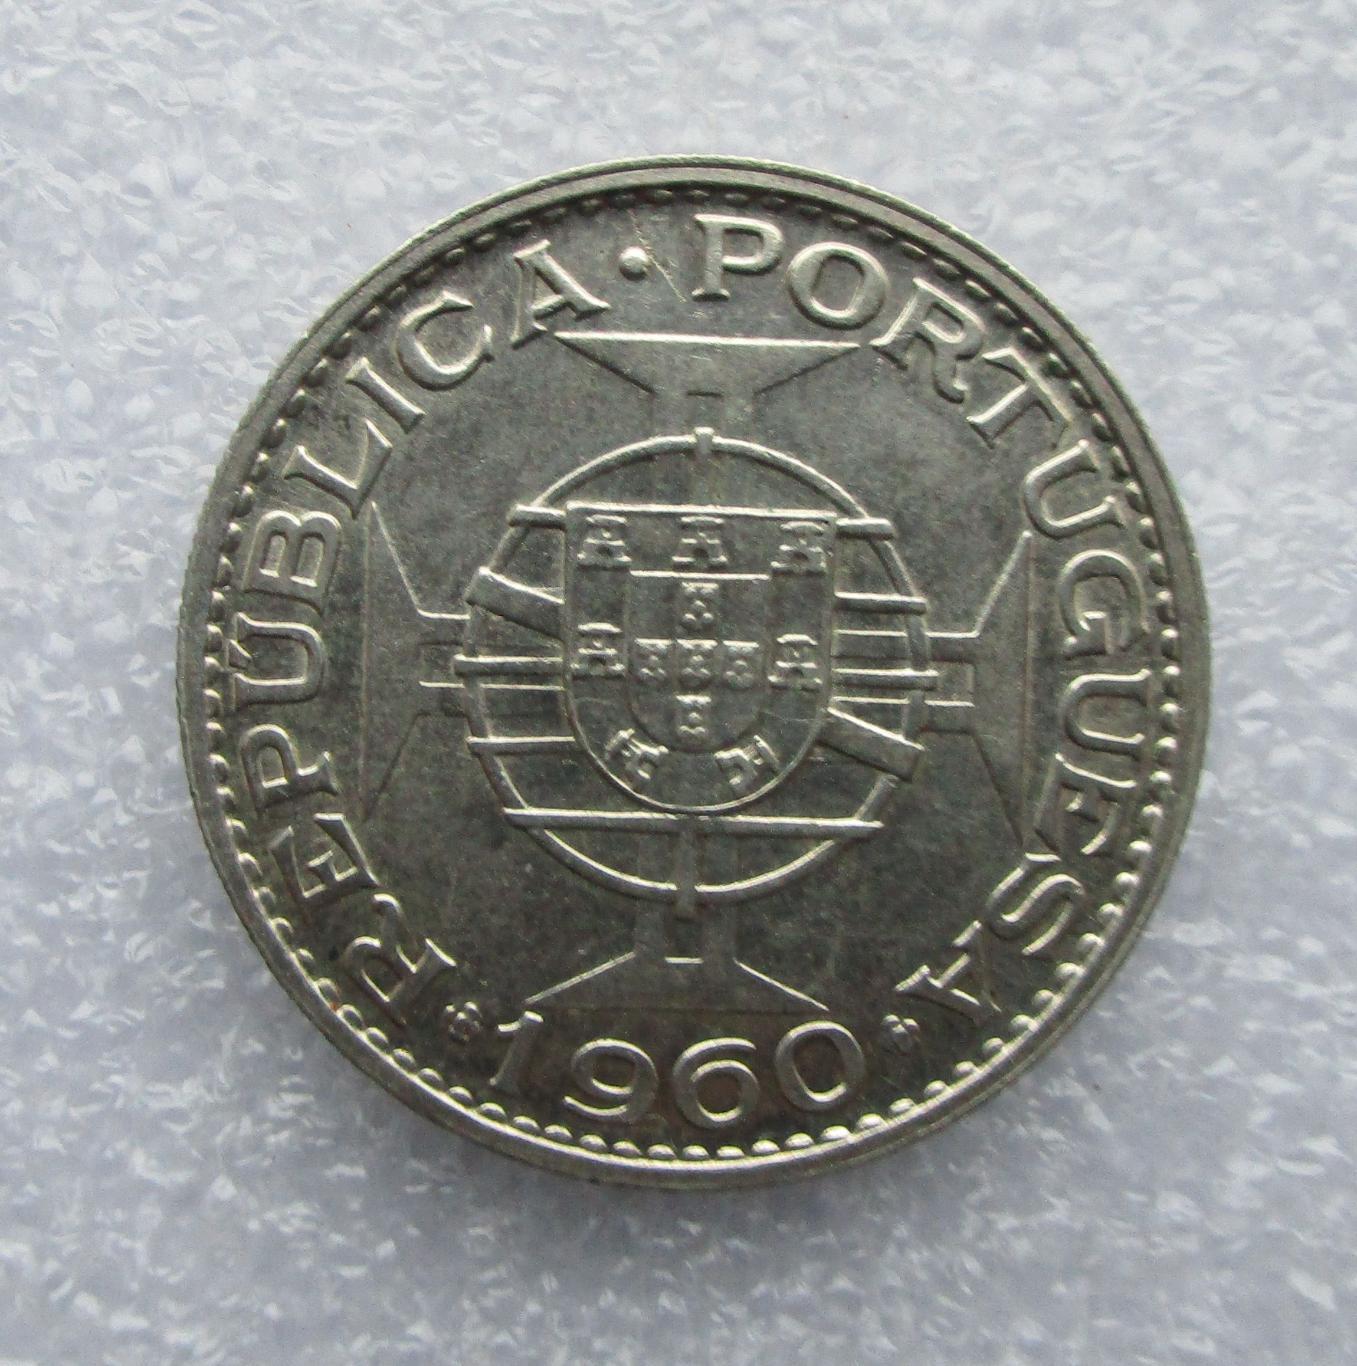 Мозамбик 20 эскудо, 1960. Серебро. UNC. Штемпельный блеск. 2